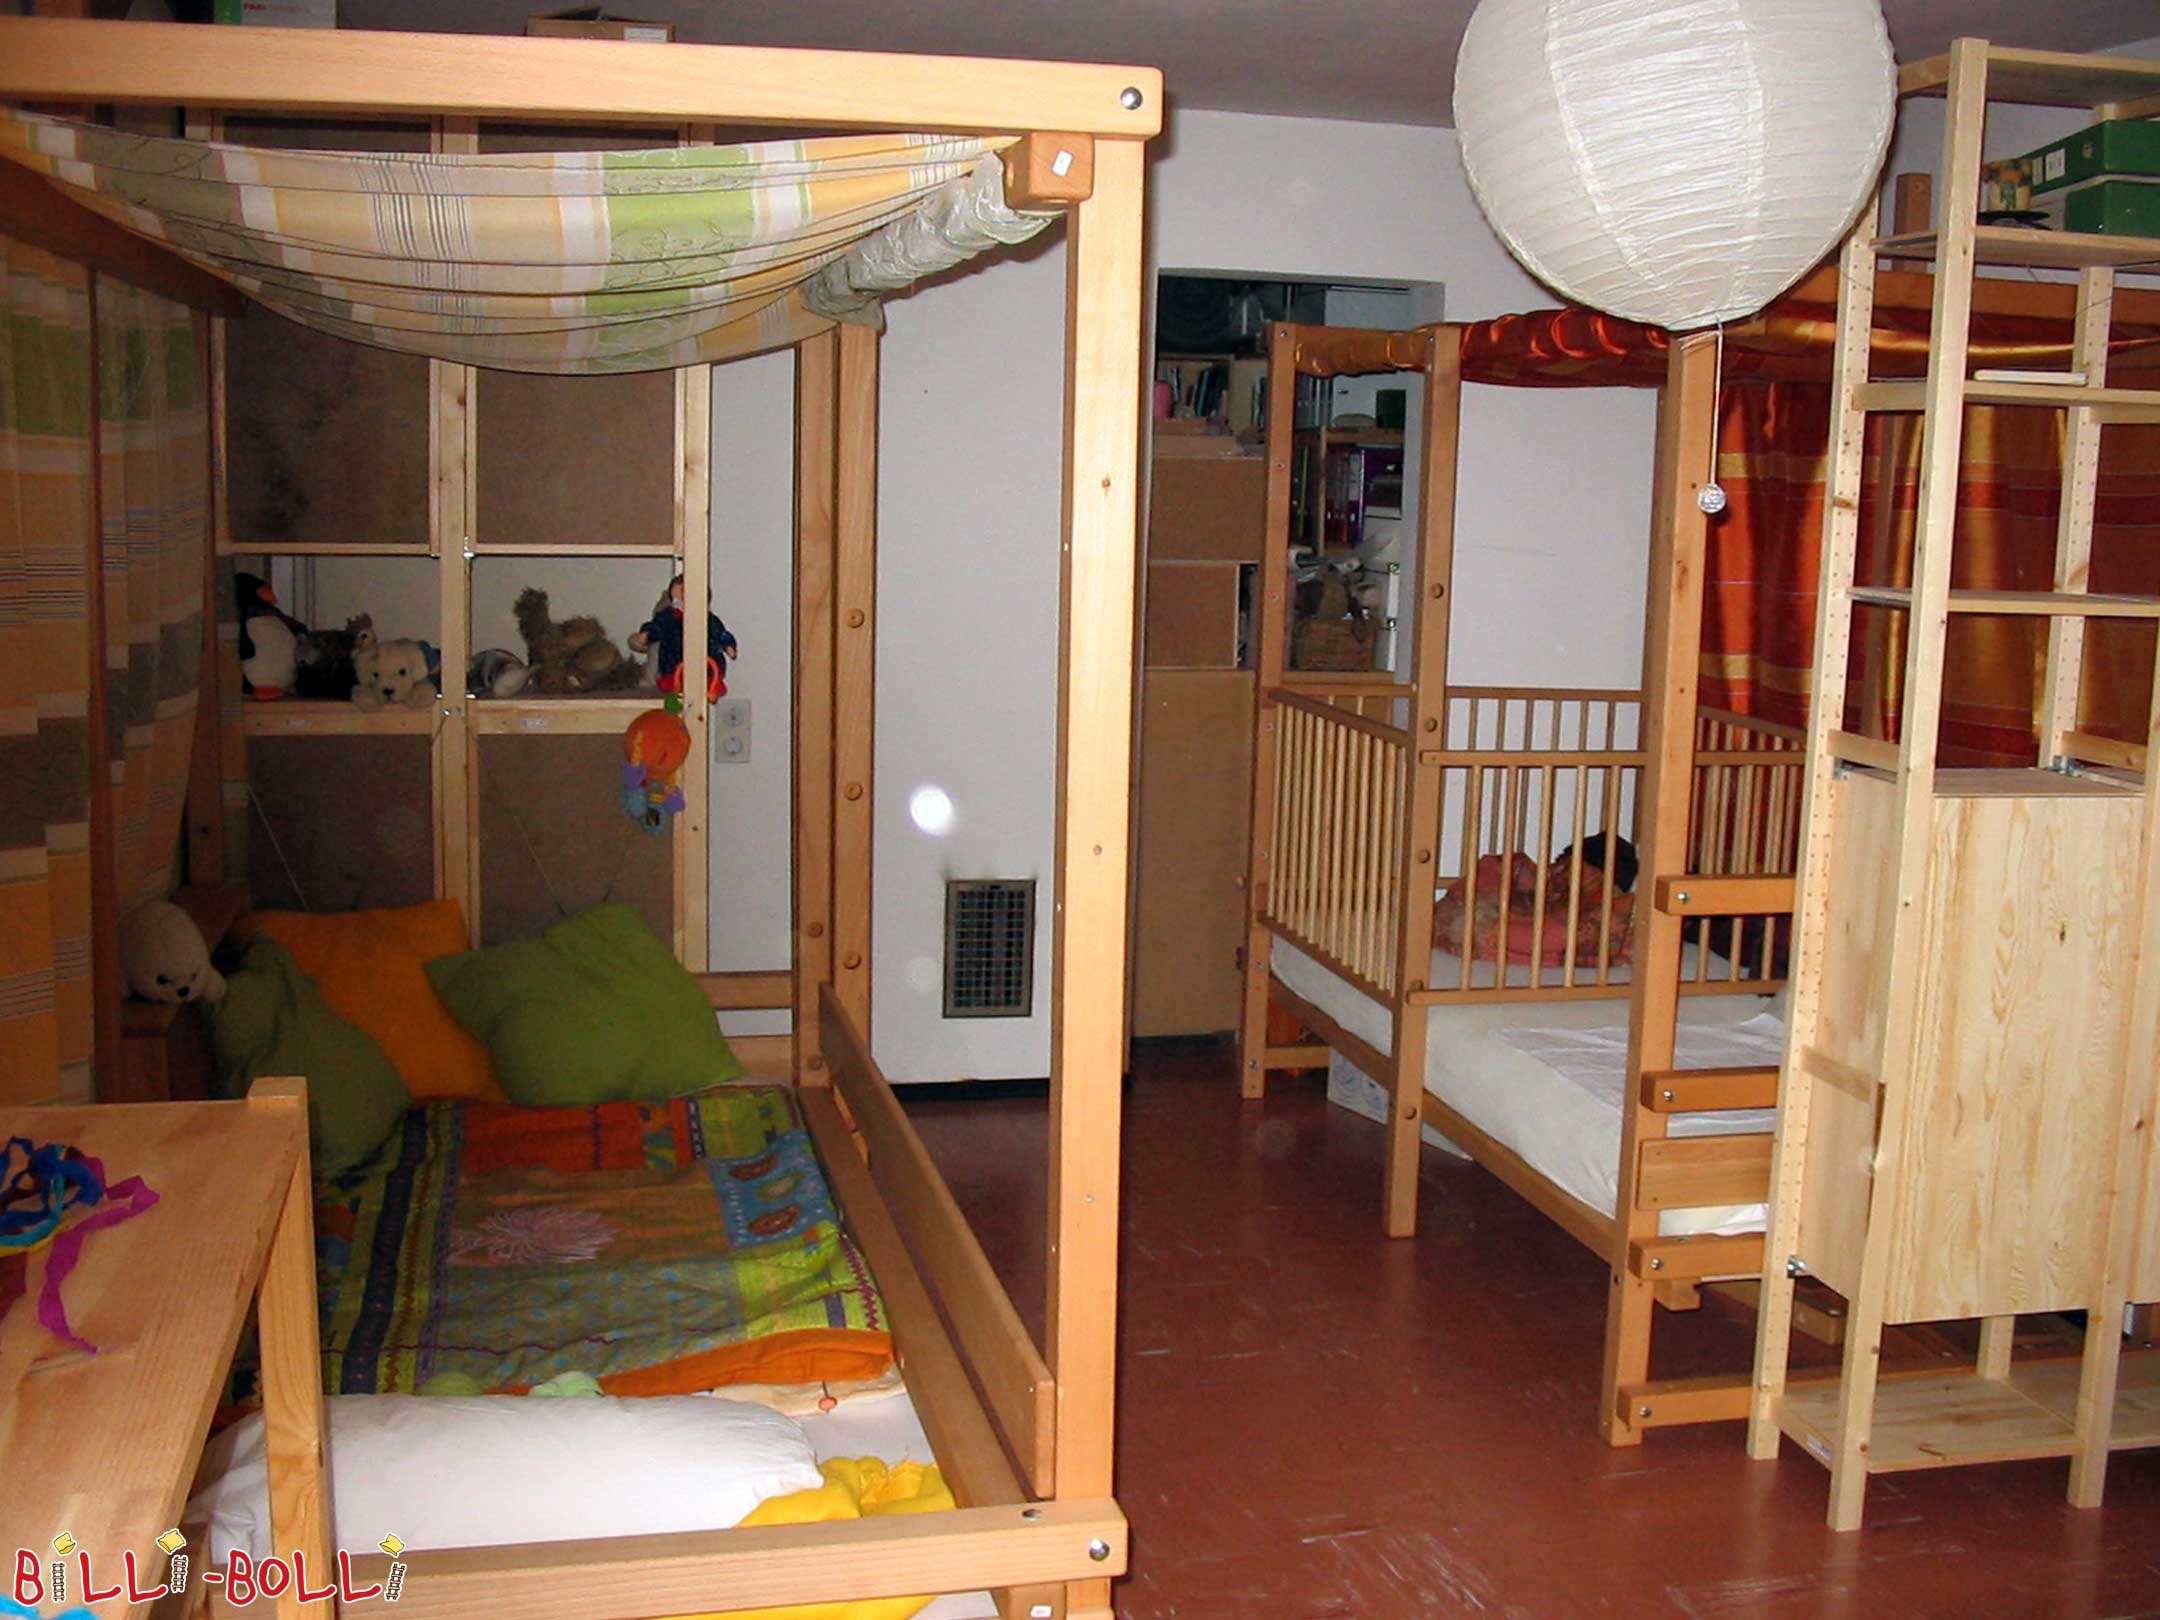 Dos llits tipus loft que creixen amb el nen a l'alçada 2, configurats com un … (Llit tipus loft creixent amb el nen)